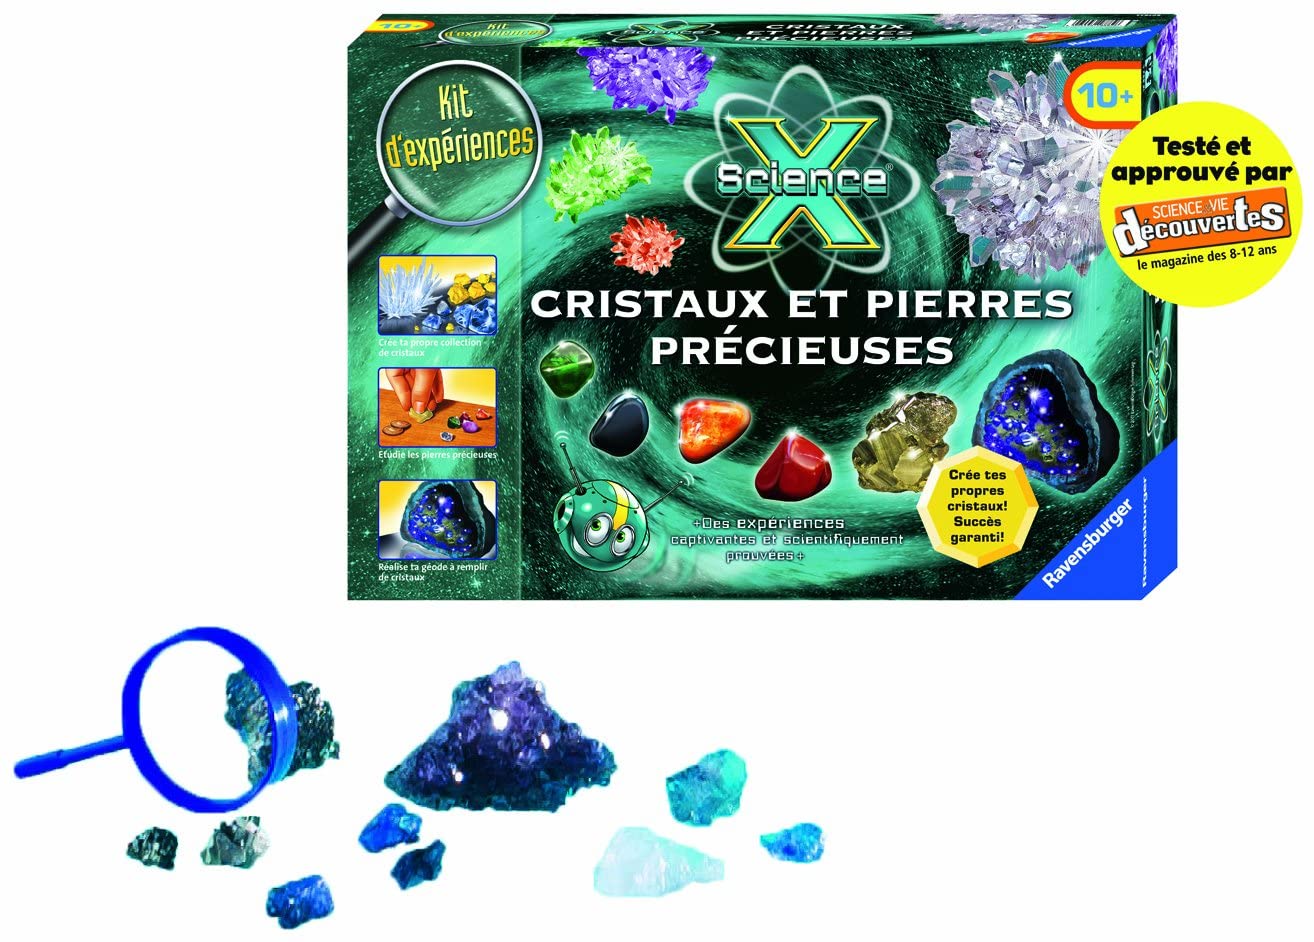 Science et jeu : Cristaux et pierres précieuses - Jeux et jouets Clementoni  - Avenue des Jeux